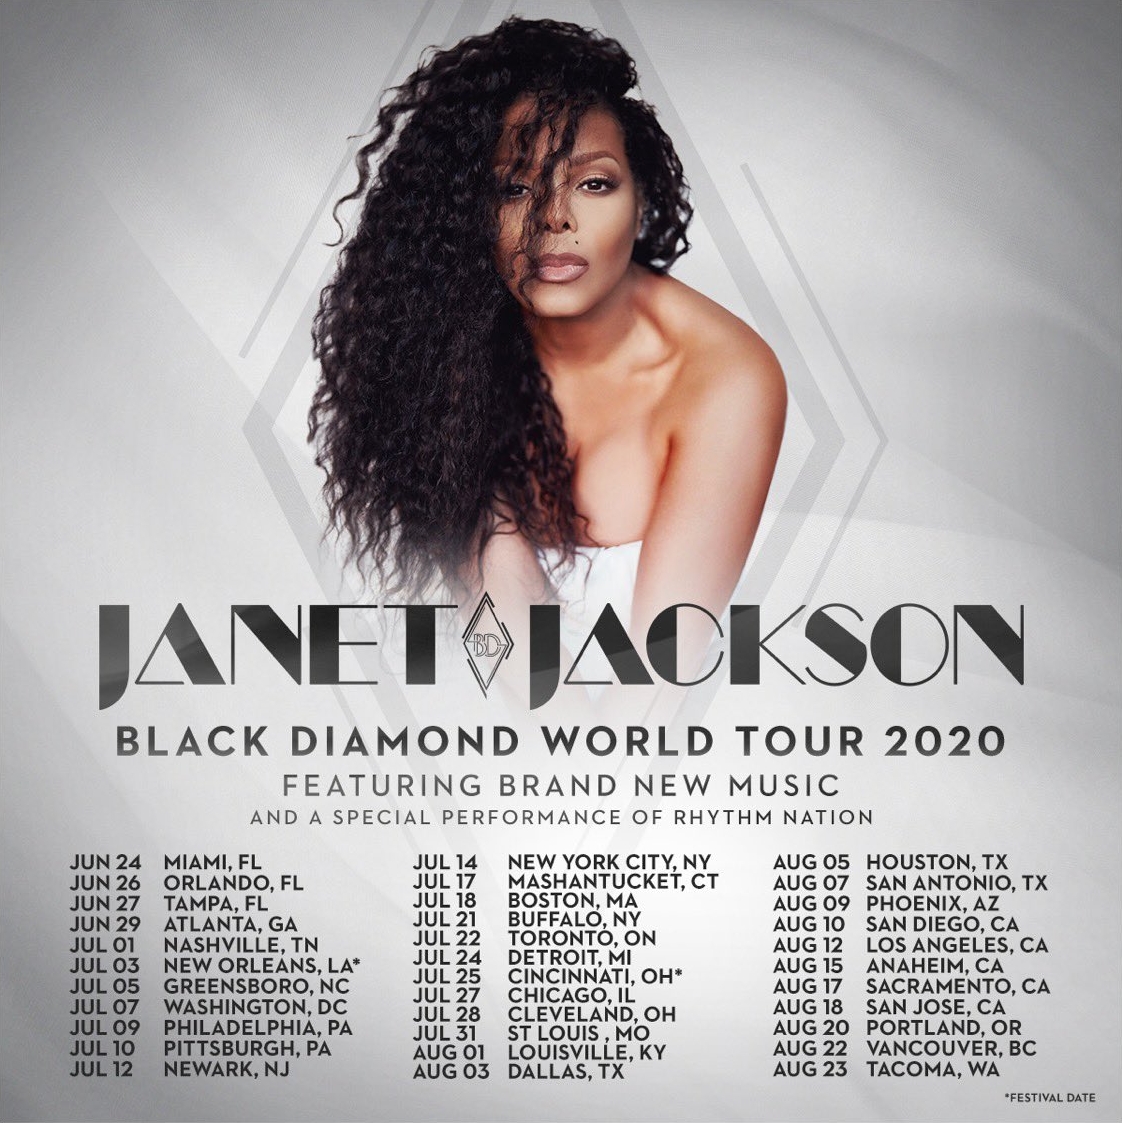 promo : Janet Jackson's Black Diamond World Tour